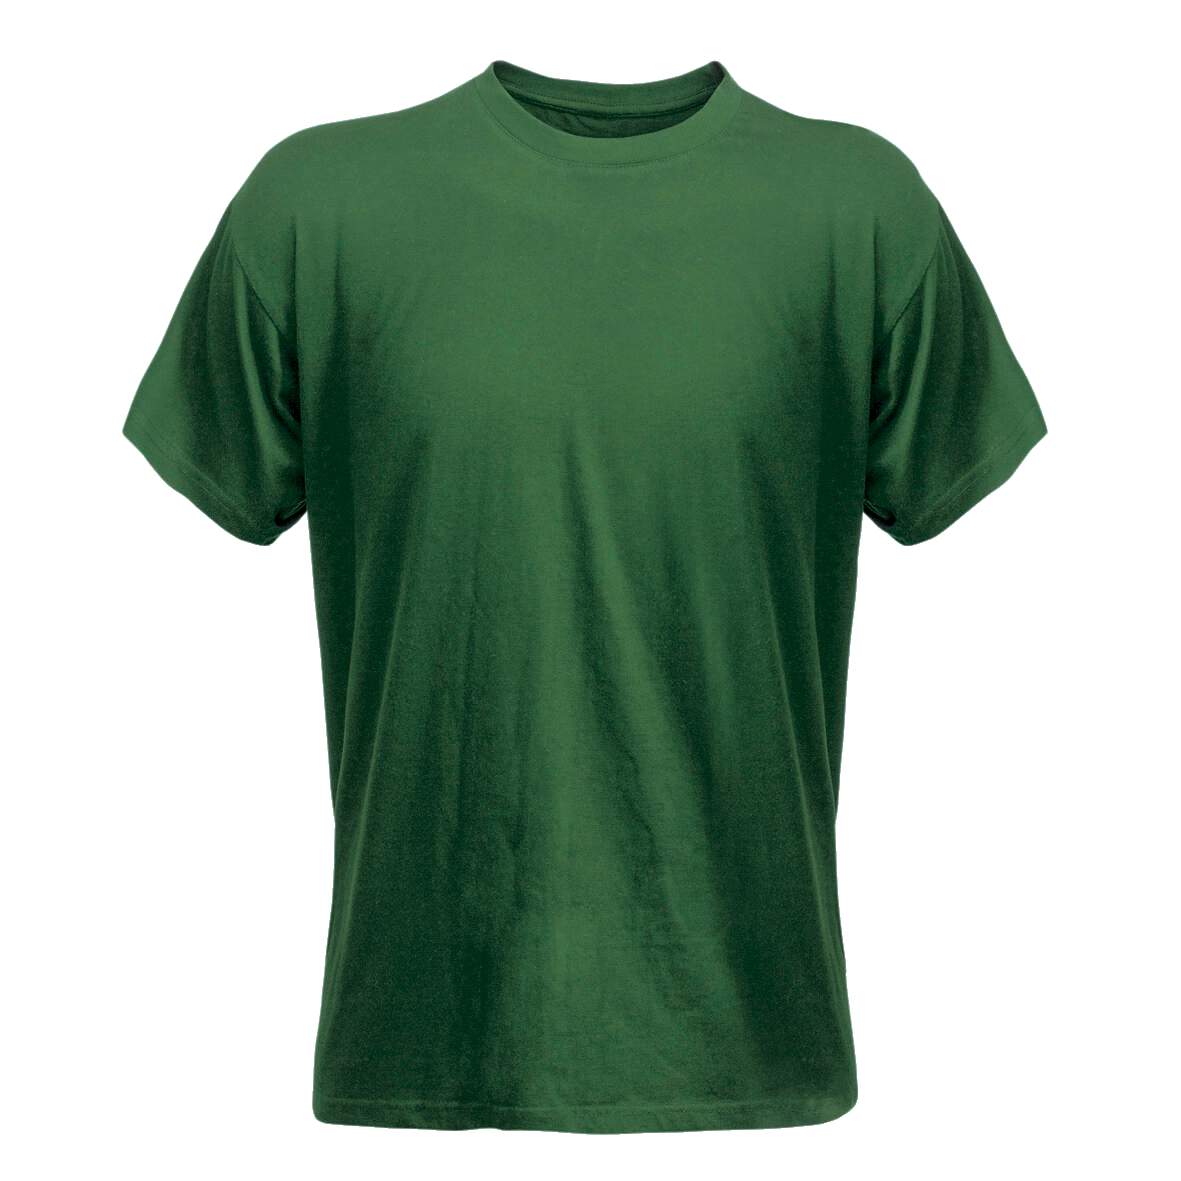 1138337 - T-Shirt grün Gr.M Code 1912